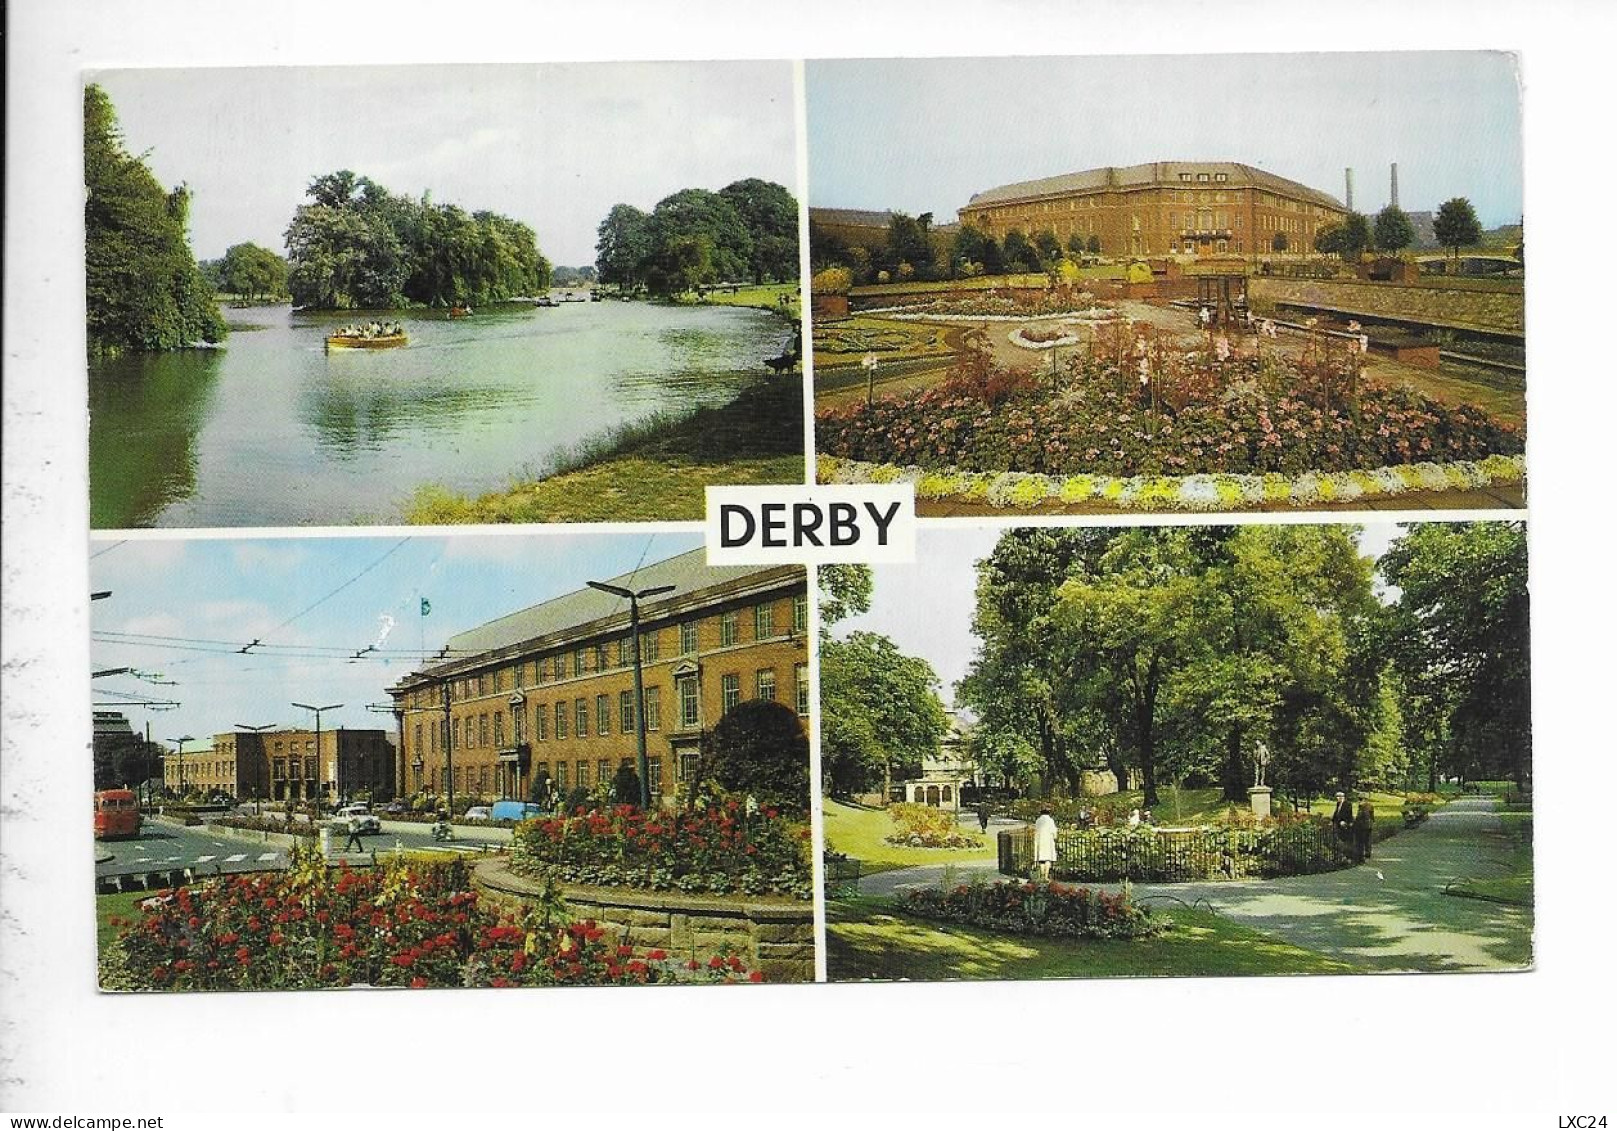 DERBY. - Derbyshire